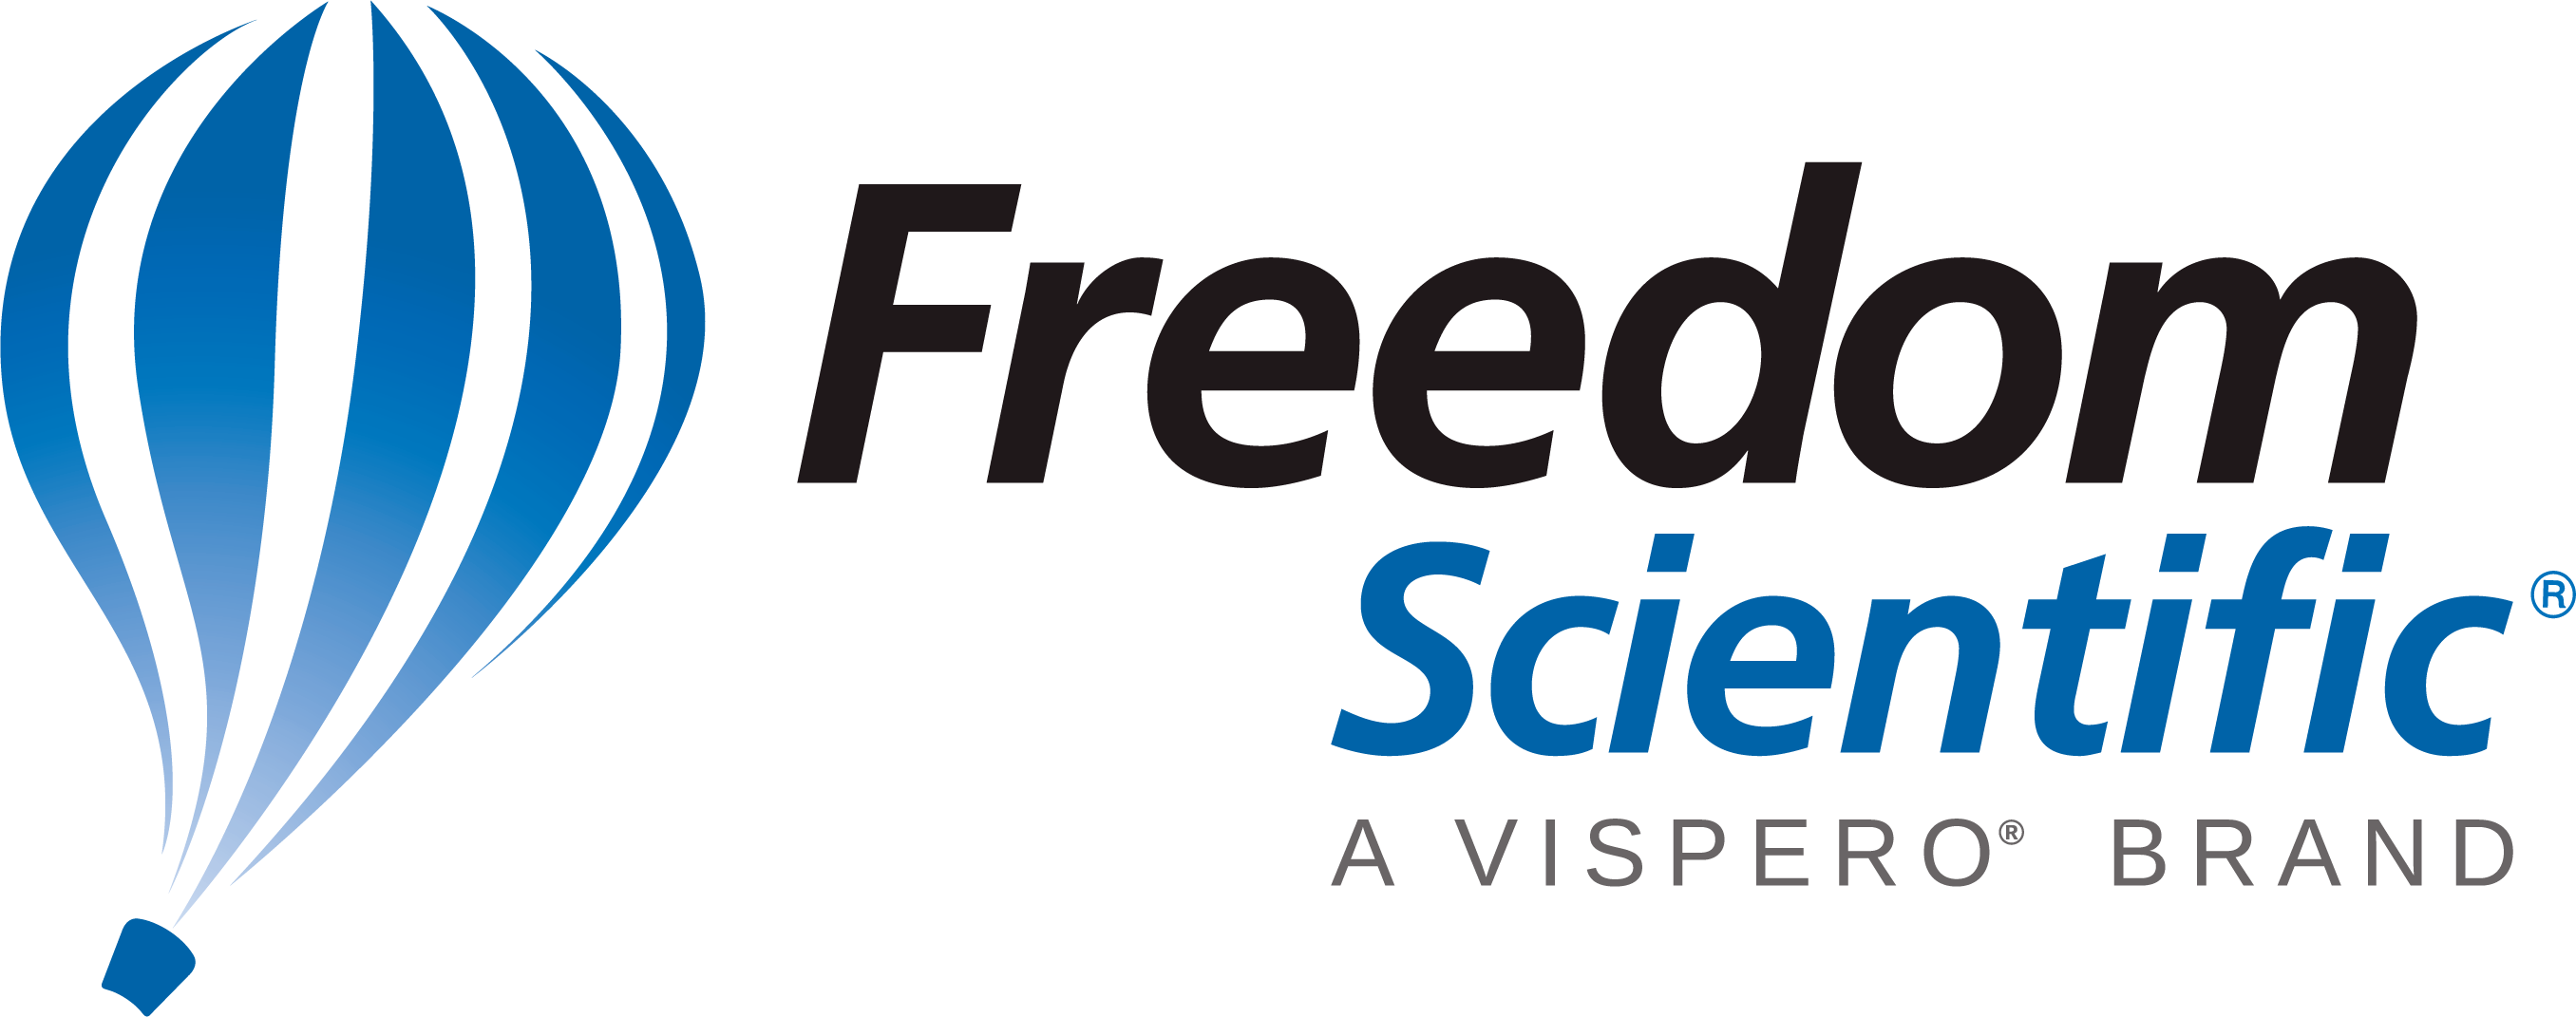 Freedom Scientific, a Vispero brand